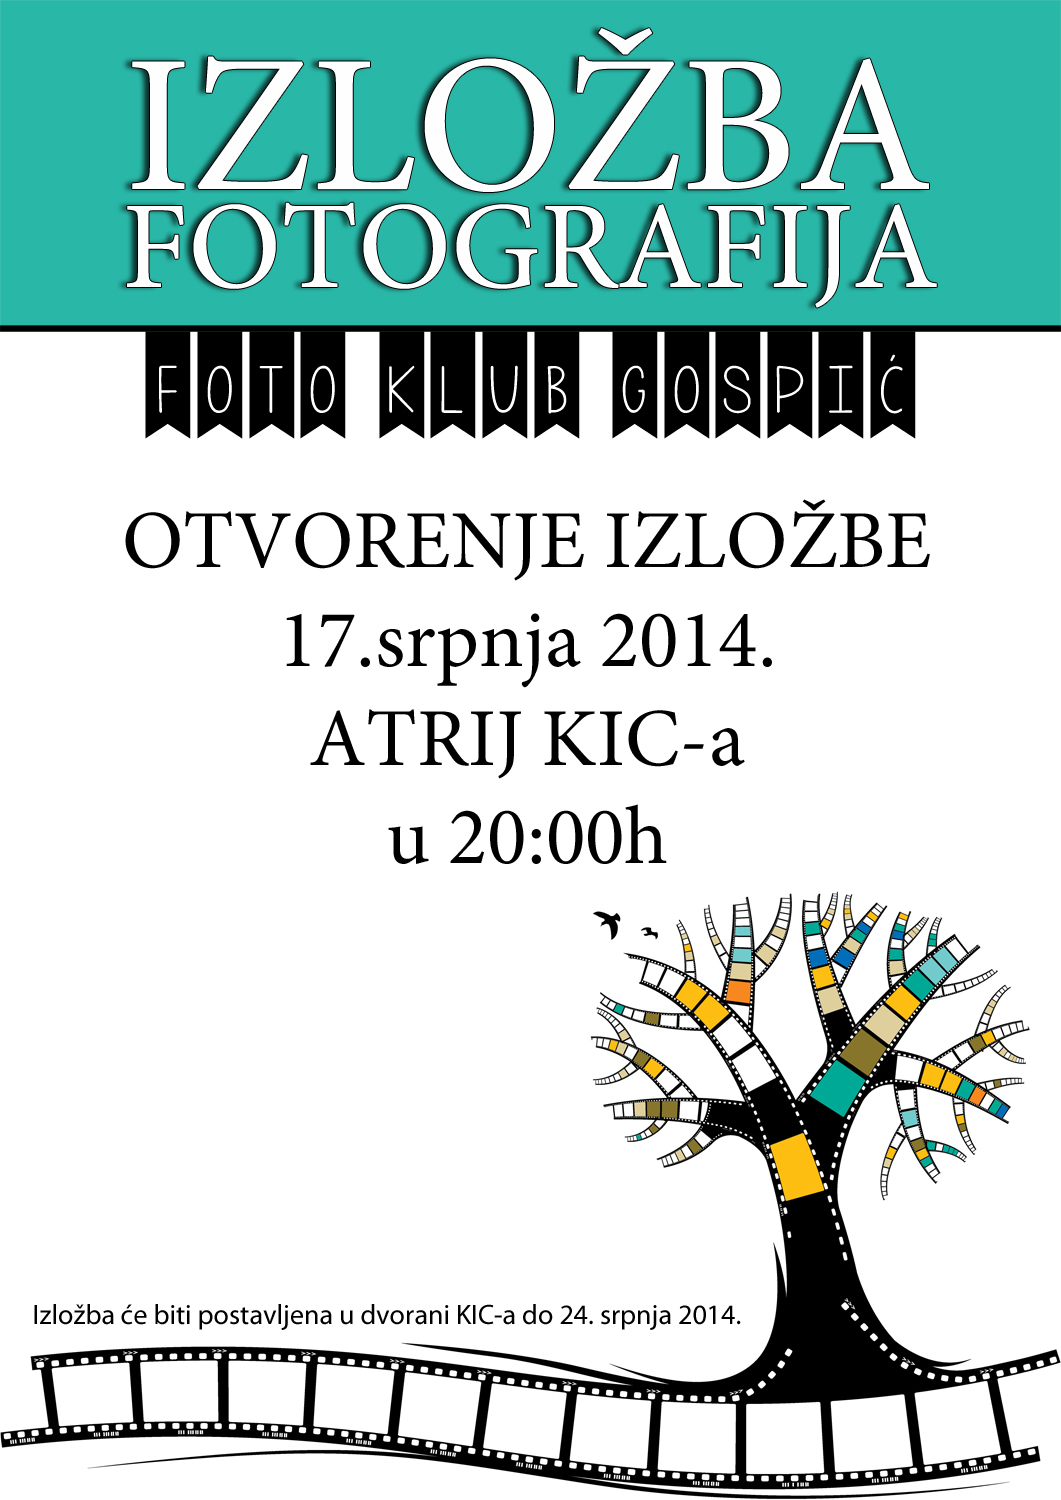 Foto klub Gospić